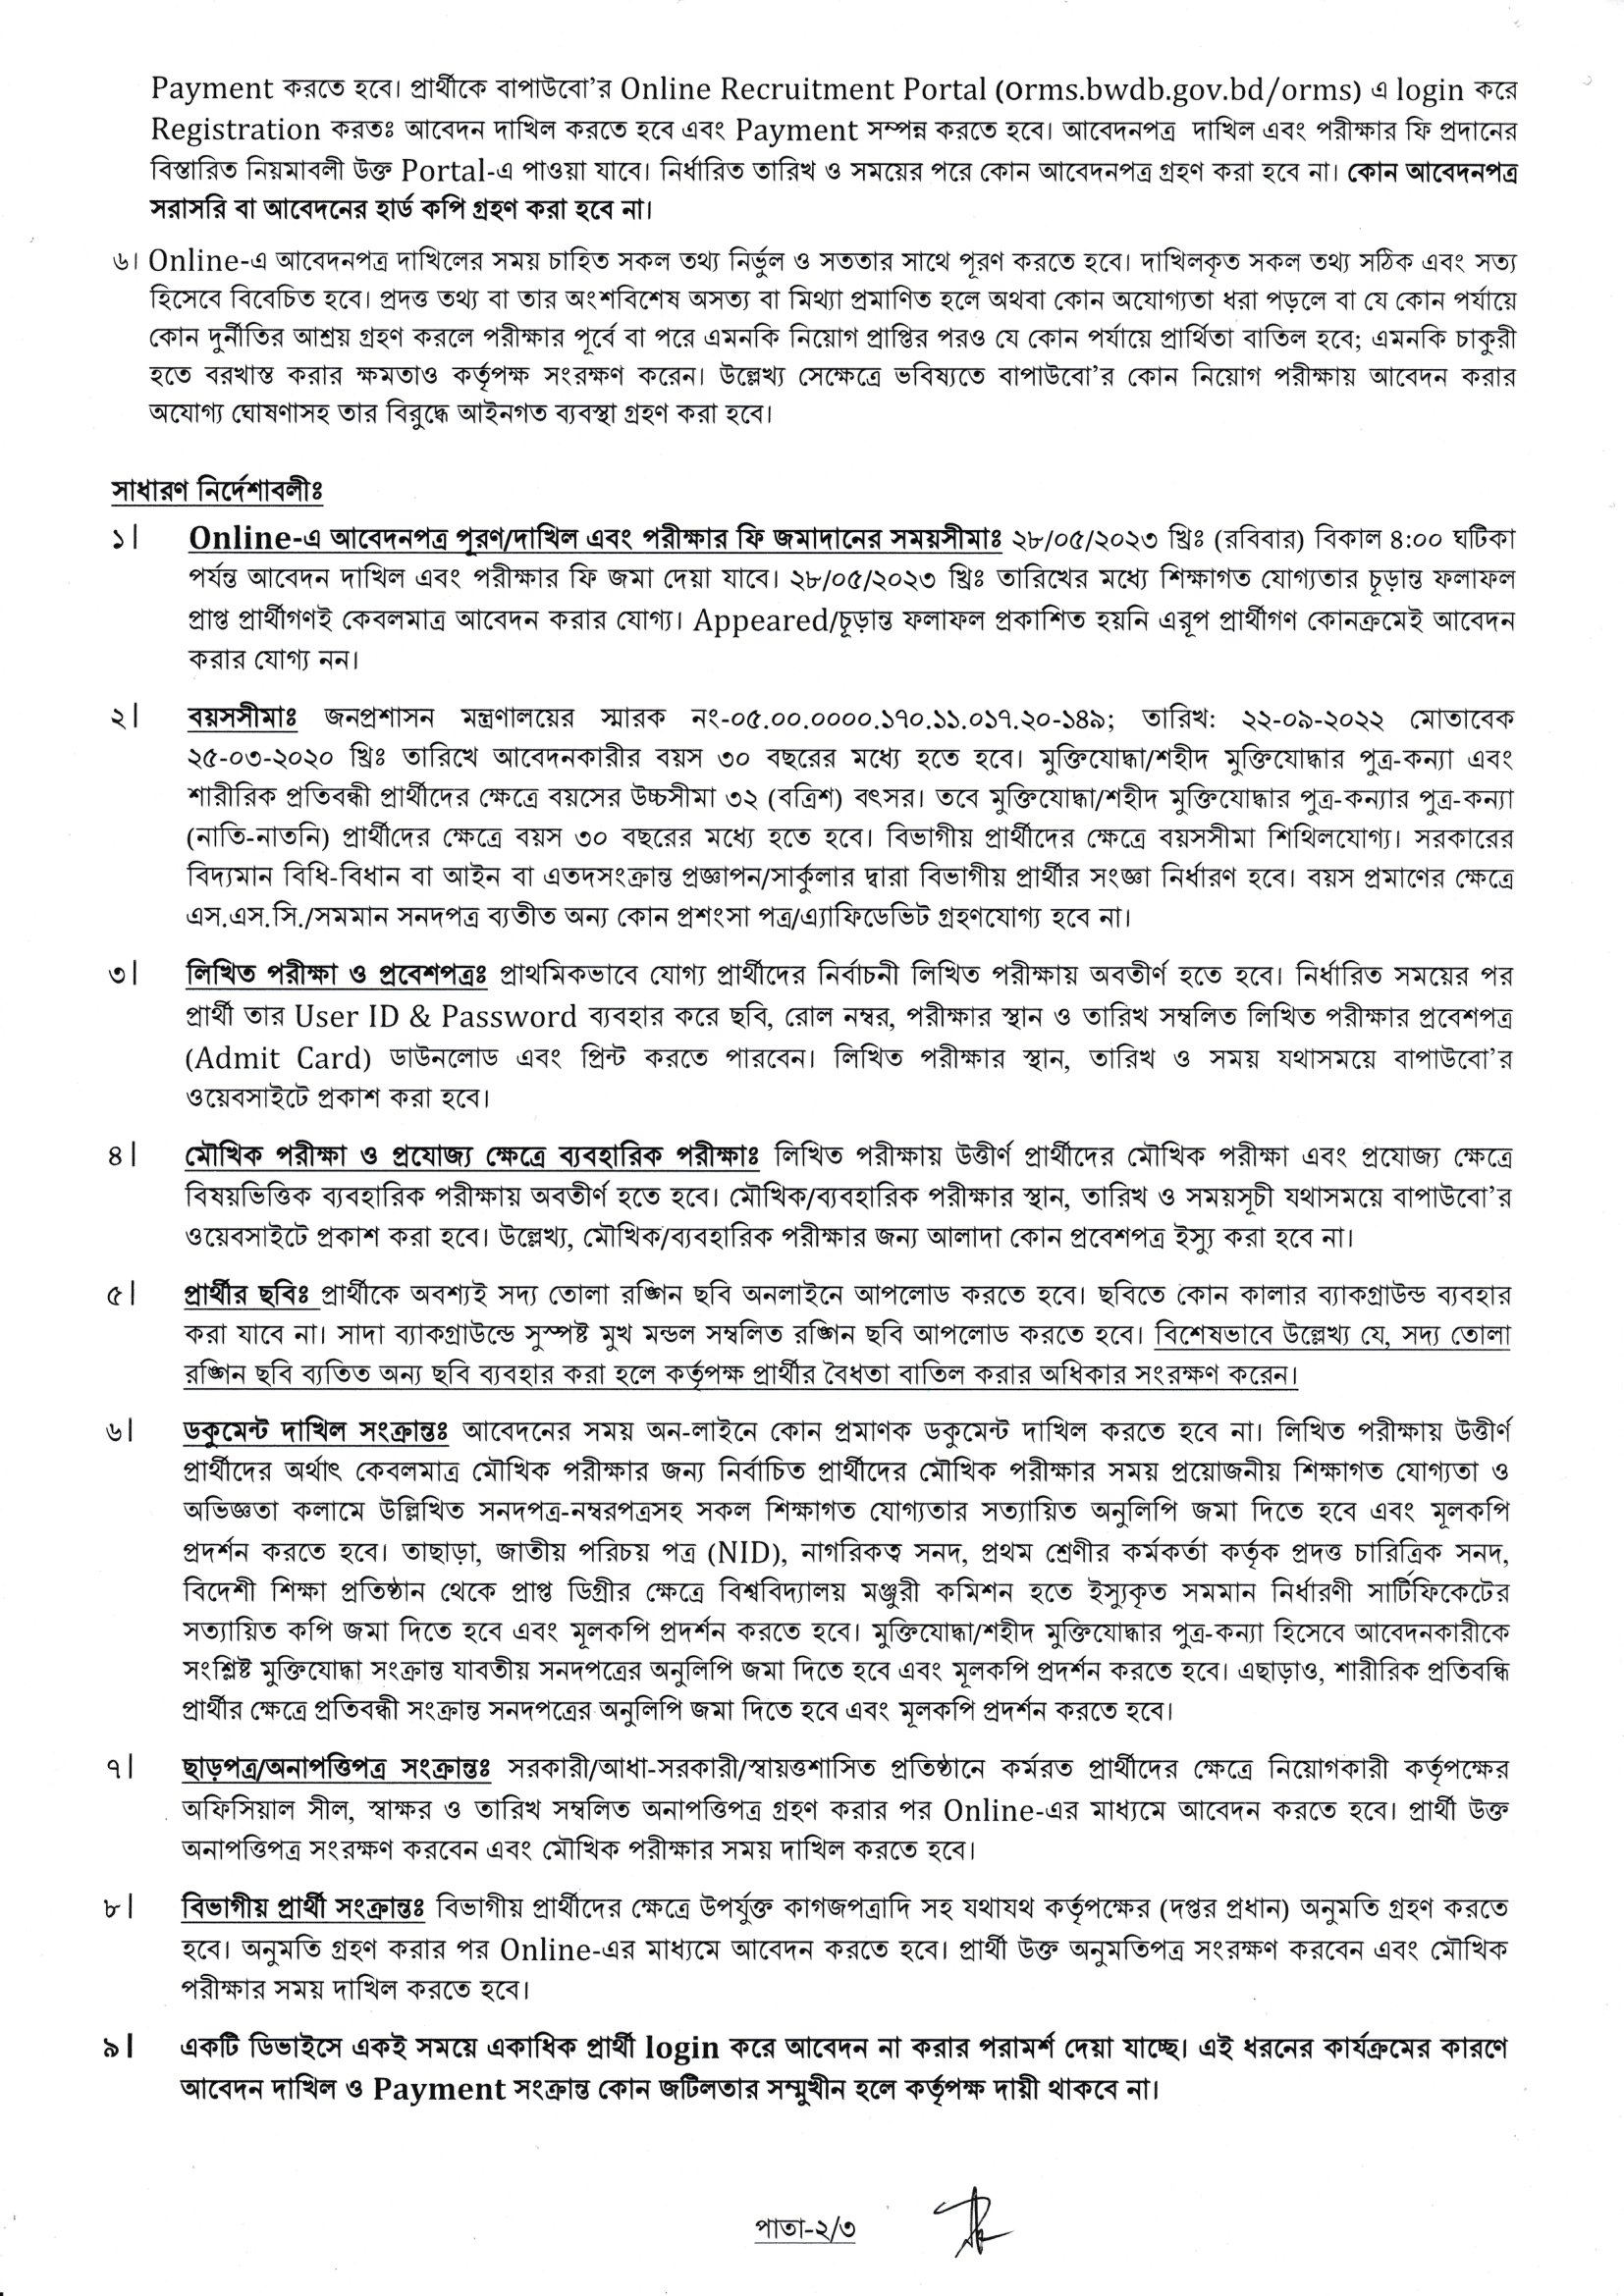 বাংলাদেশ পানি উন্নয়ন বোর্ড নিয়োগ বিজ্ঞপ্তি 2023 - Bangladesh Water Development Board BWDB Job Circular 2023 - পানি উন্নয়ন বোর্ডে নতুন নিয়োগ বিজ্ঞপ্তি ২০২৩ - BWDB job circular 2023 - সরকারি নিয়োগ বিজ্ঞপ্তি ২০২৩